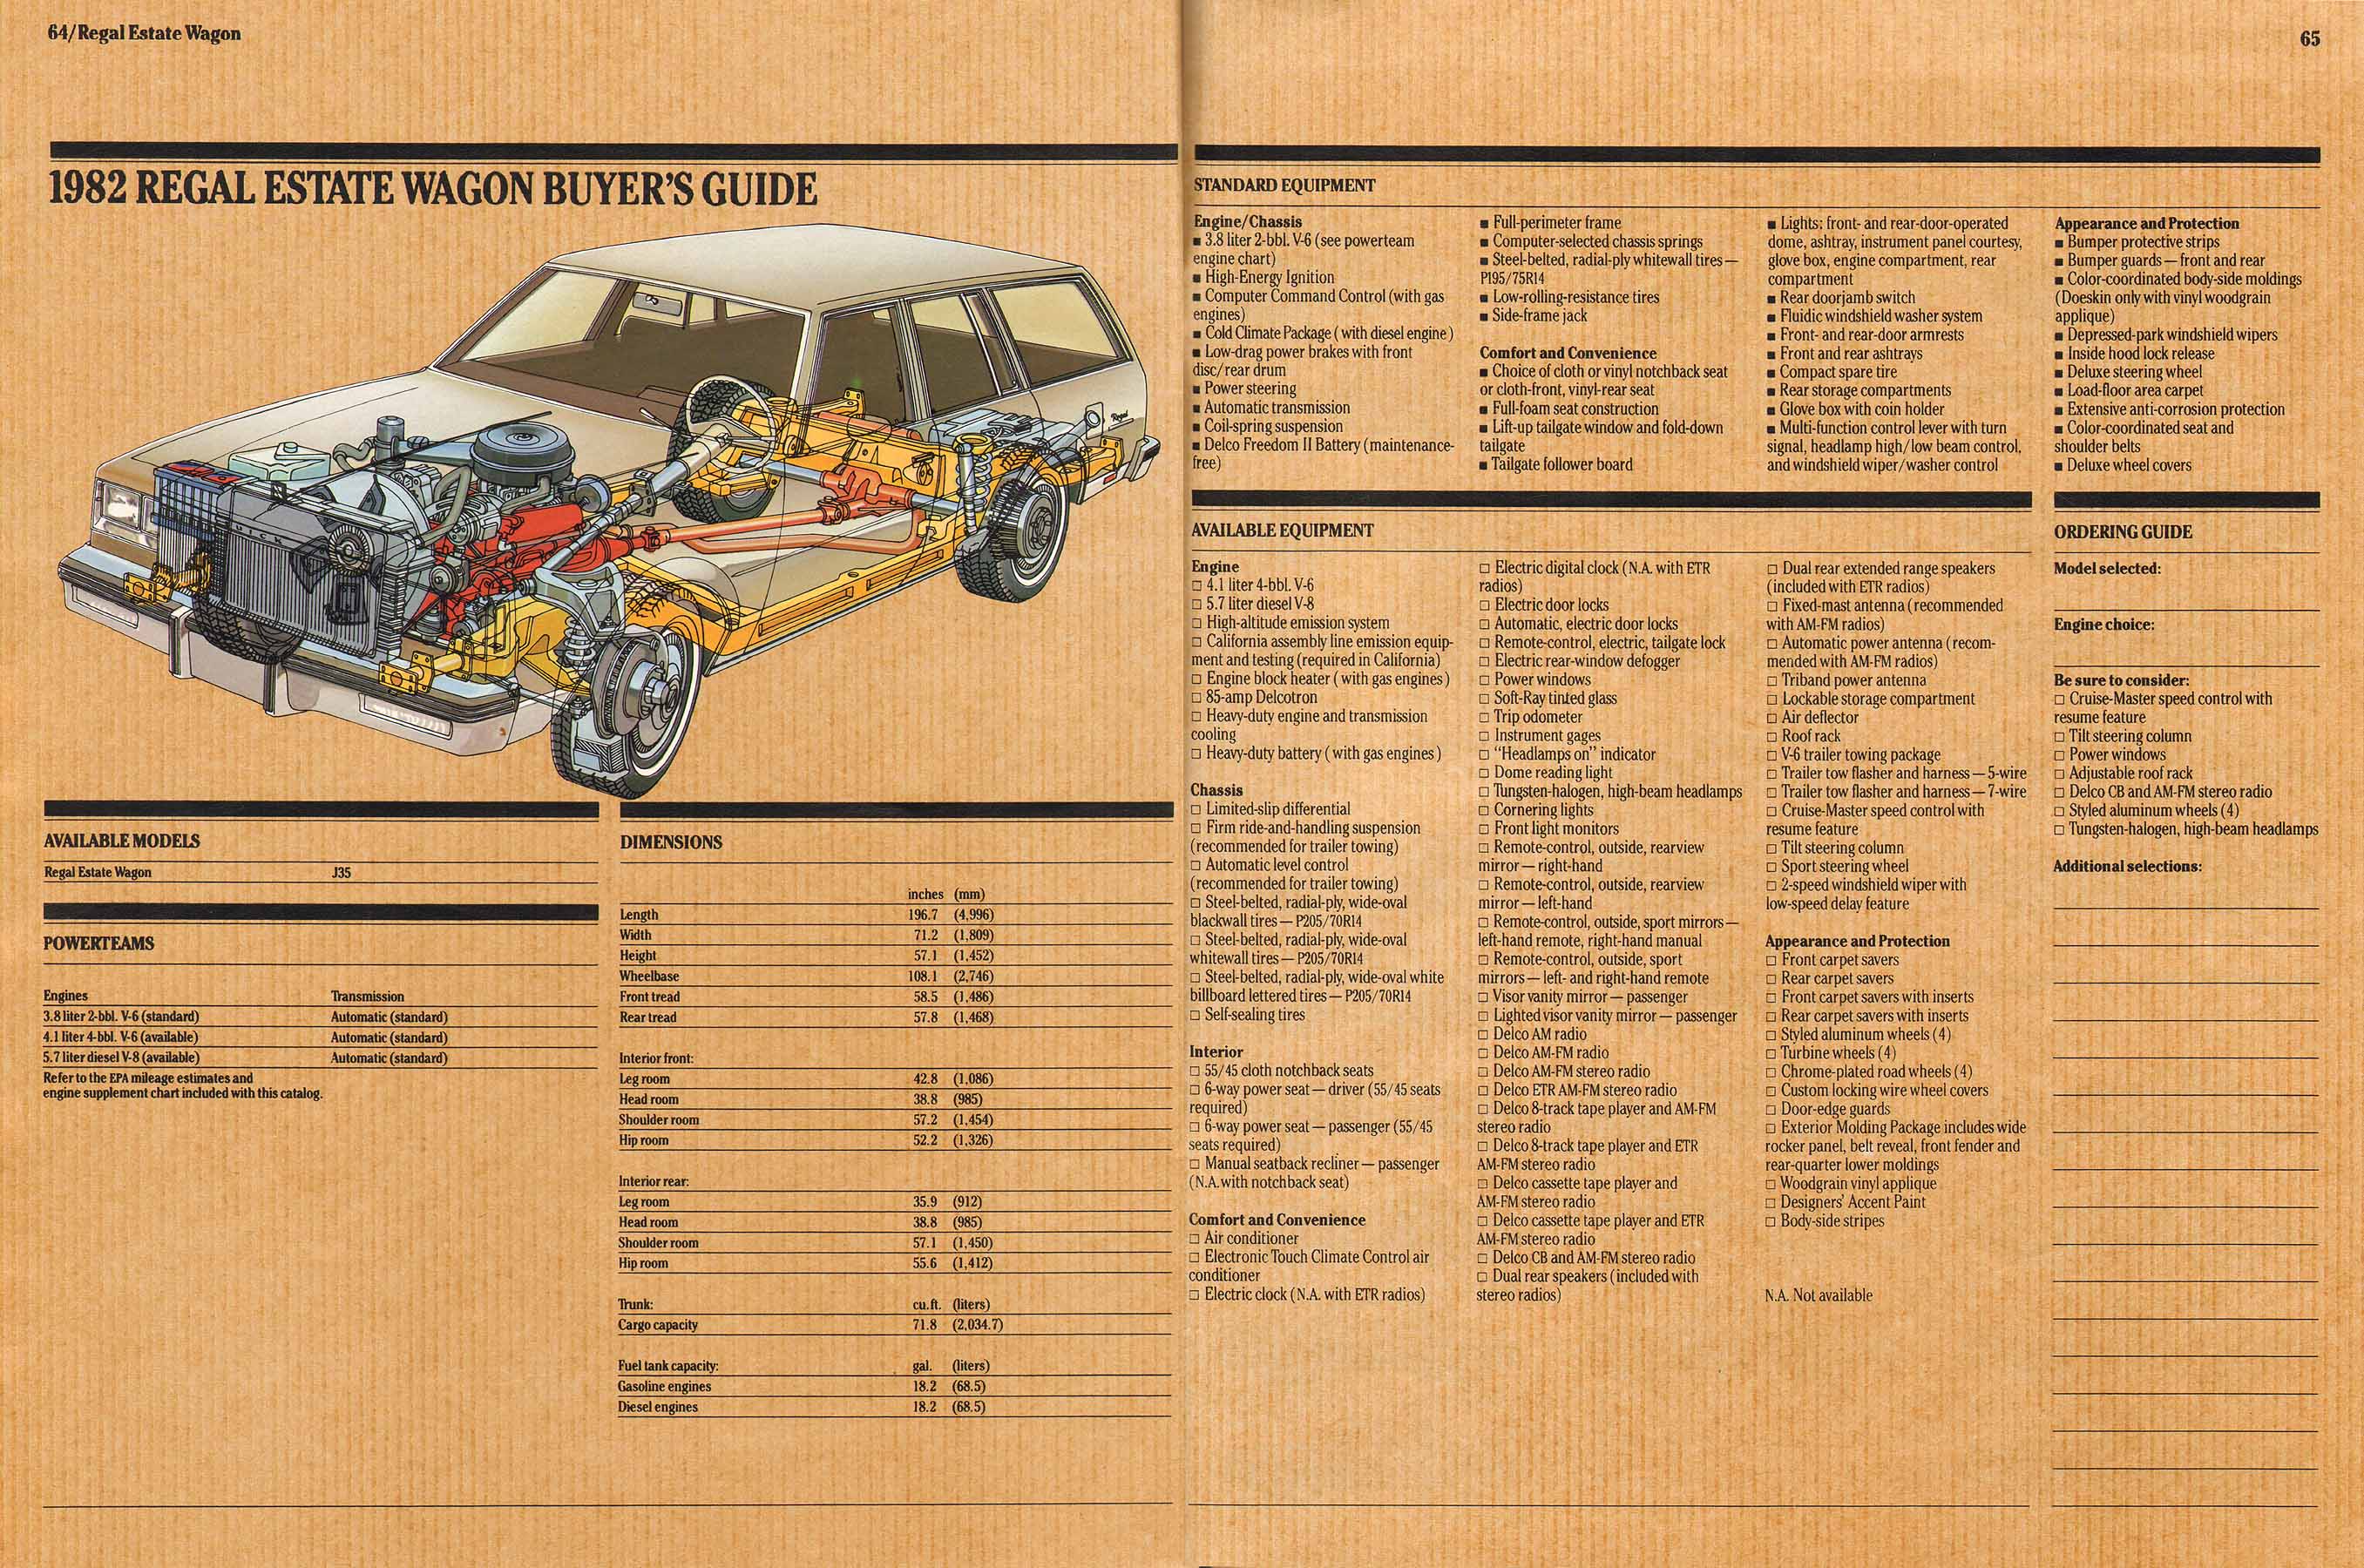 1982 Buick Full Line Prestige-64-65